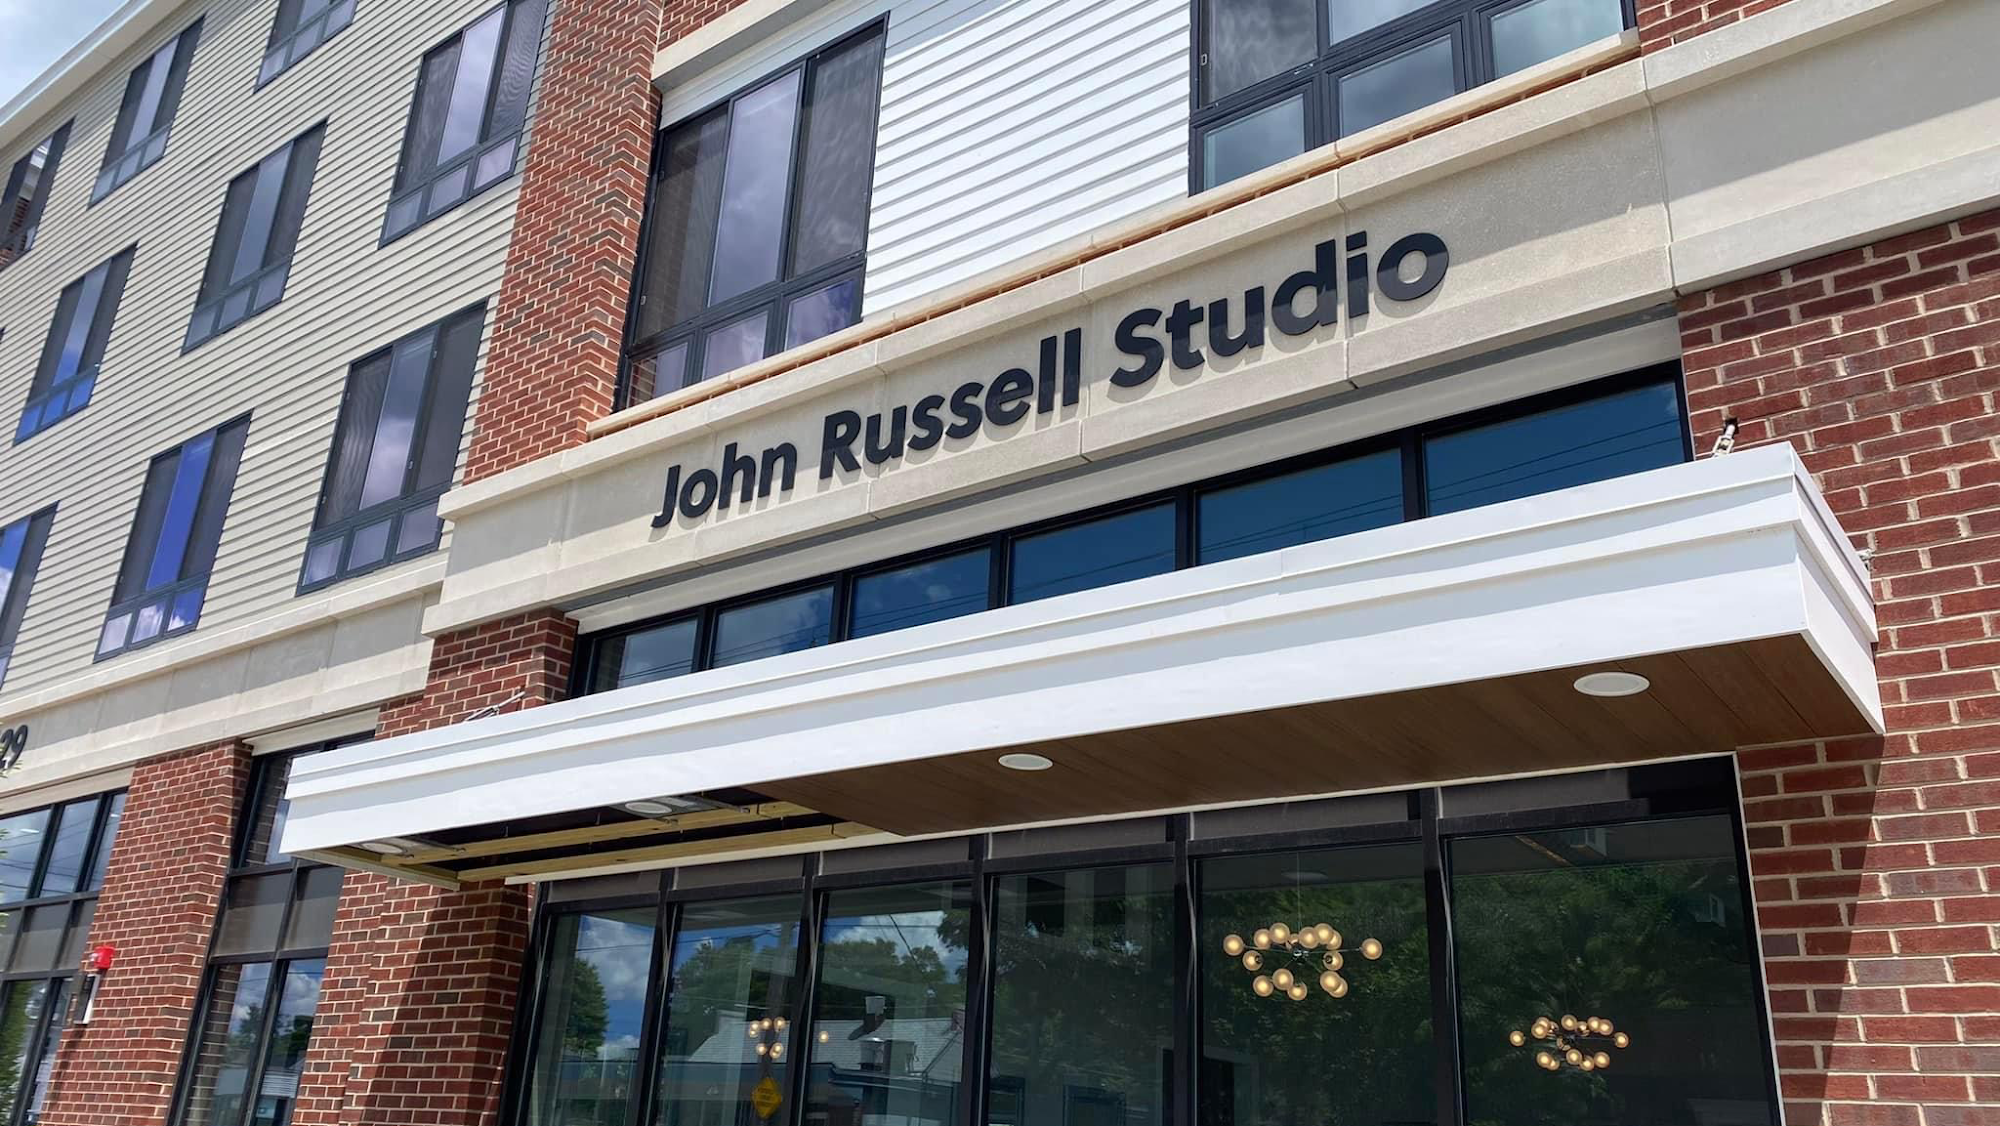 John Russell Studio - Hair Salon 629 Washington St, Whitman Massachusetts 02382